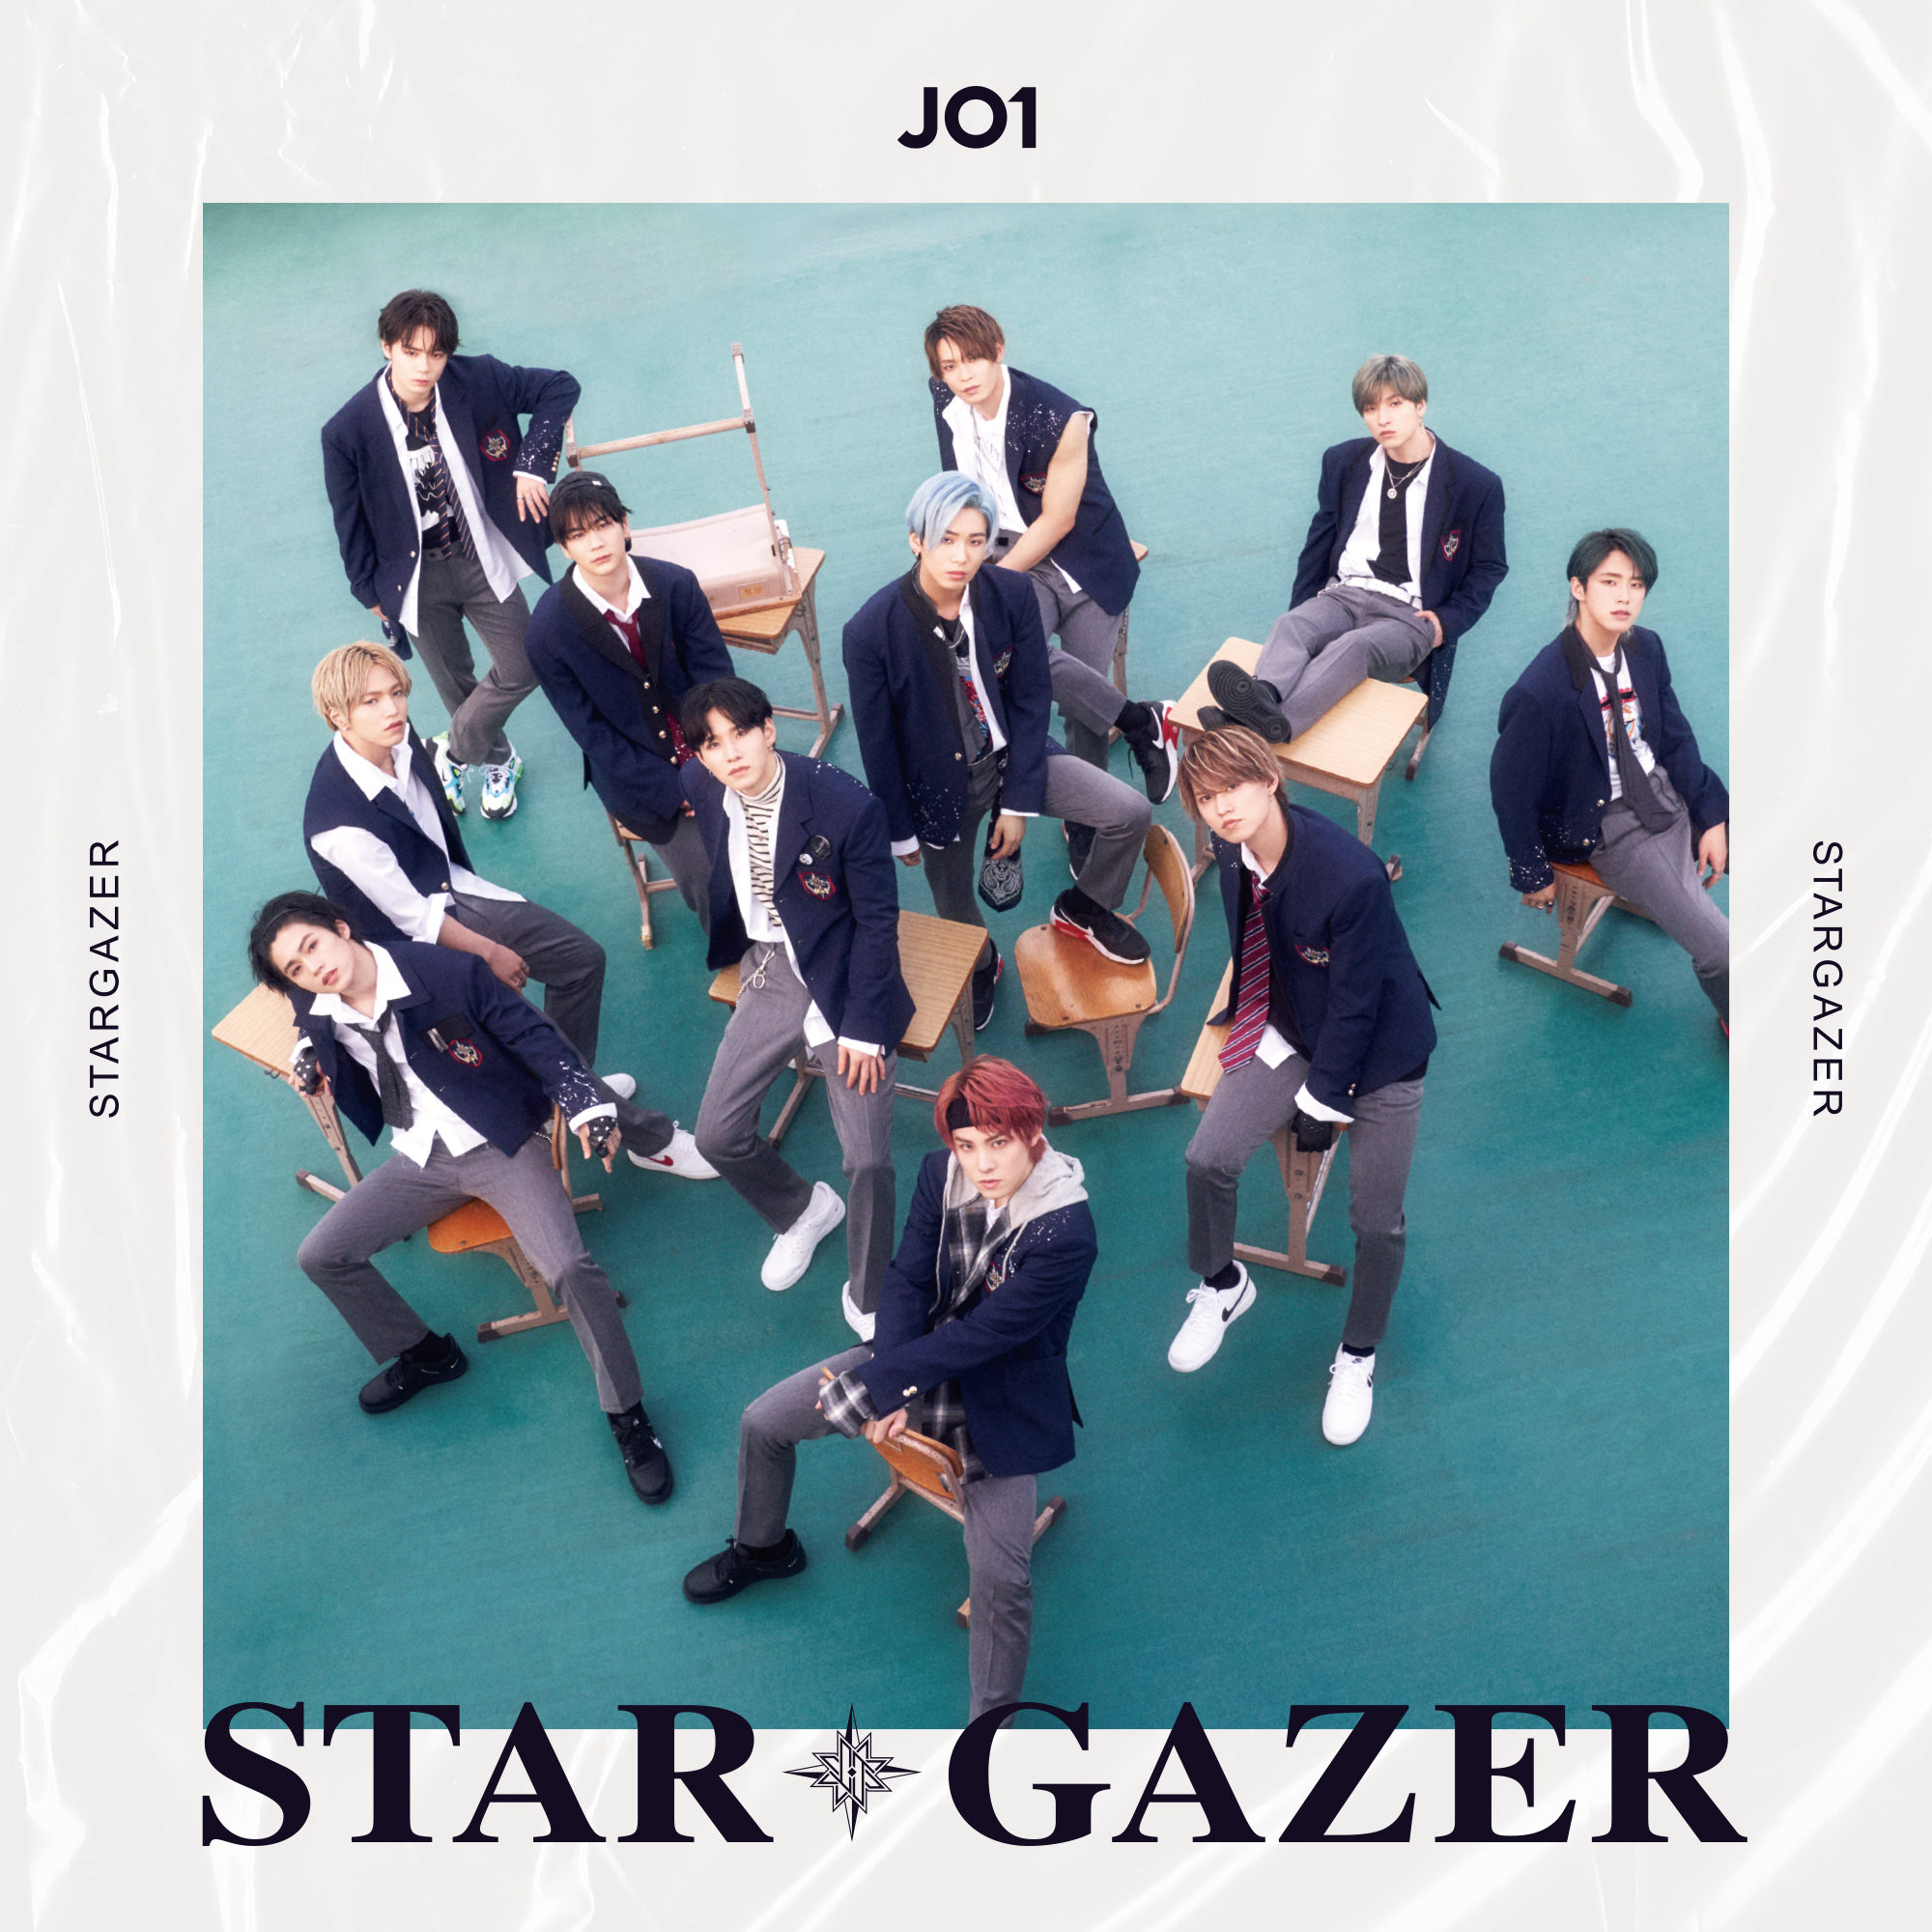 JO1 sur Twitter : "JO1 2ND SINGLE 『STARGAZER』 🎼 2020.08.26 Release  🔗https://t.co/fja69sbTpy #JO1 #ジェイオーワン #STARGAZER #スターゲイザー… "